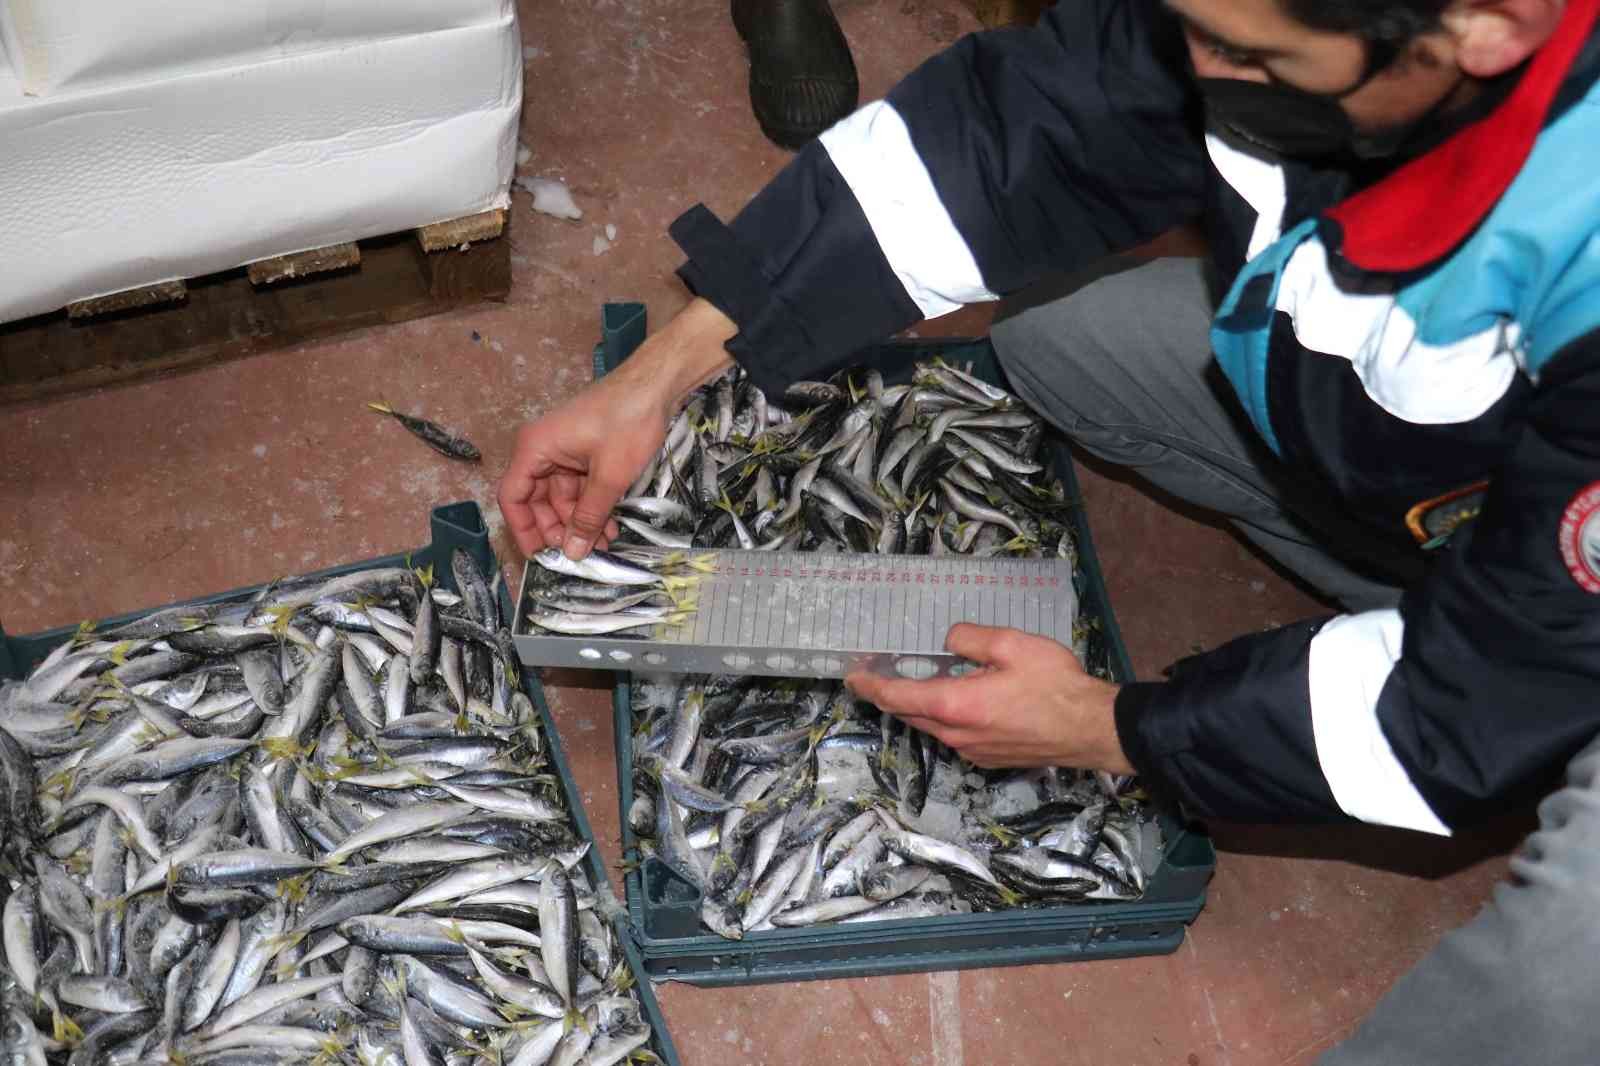 Boy ve av yasağına uymayan 8 tona yakın balığa el konuldu #izmir